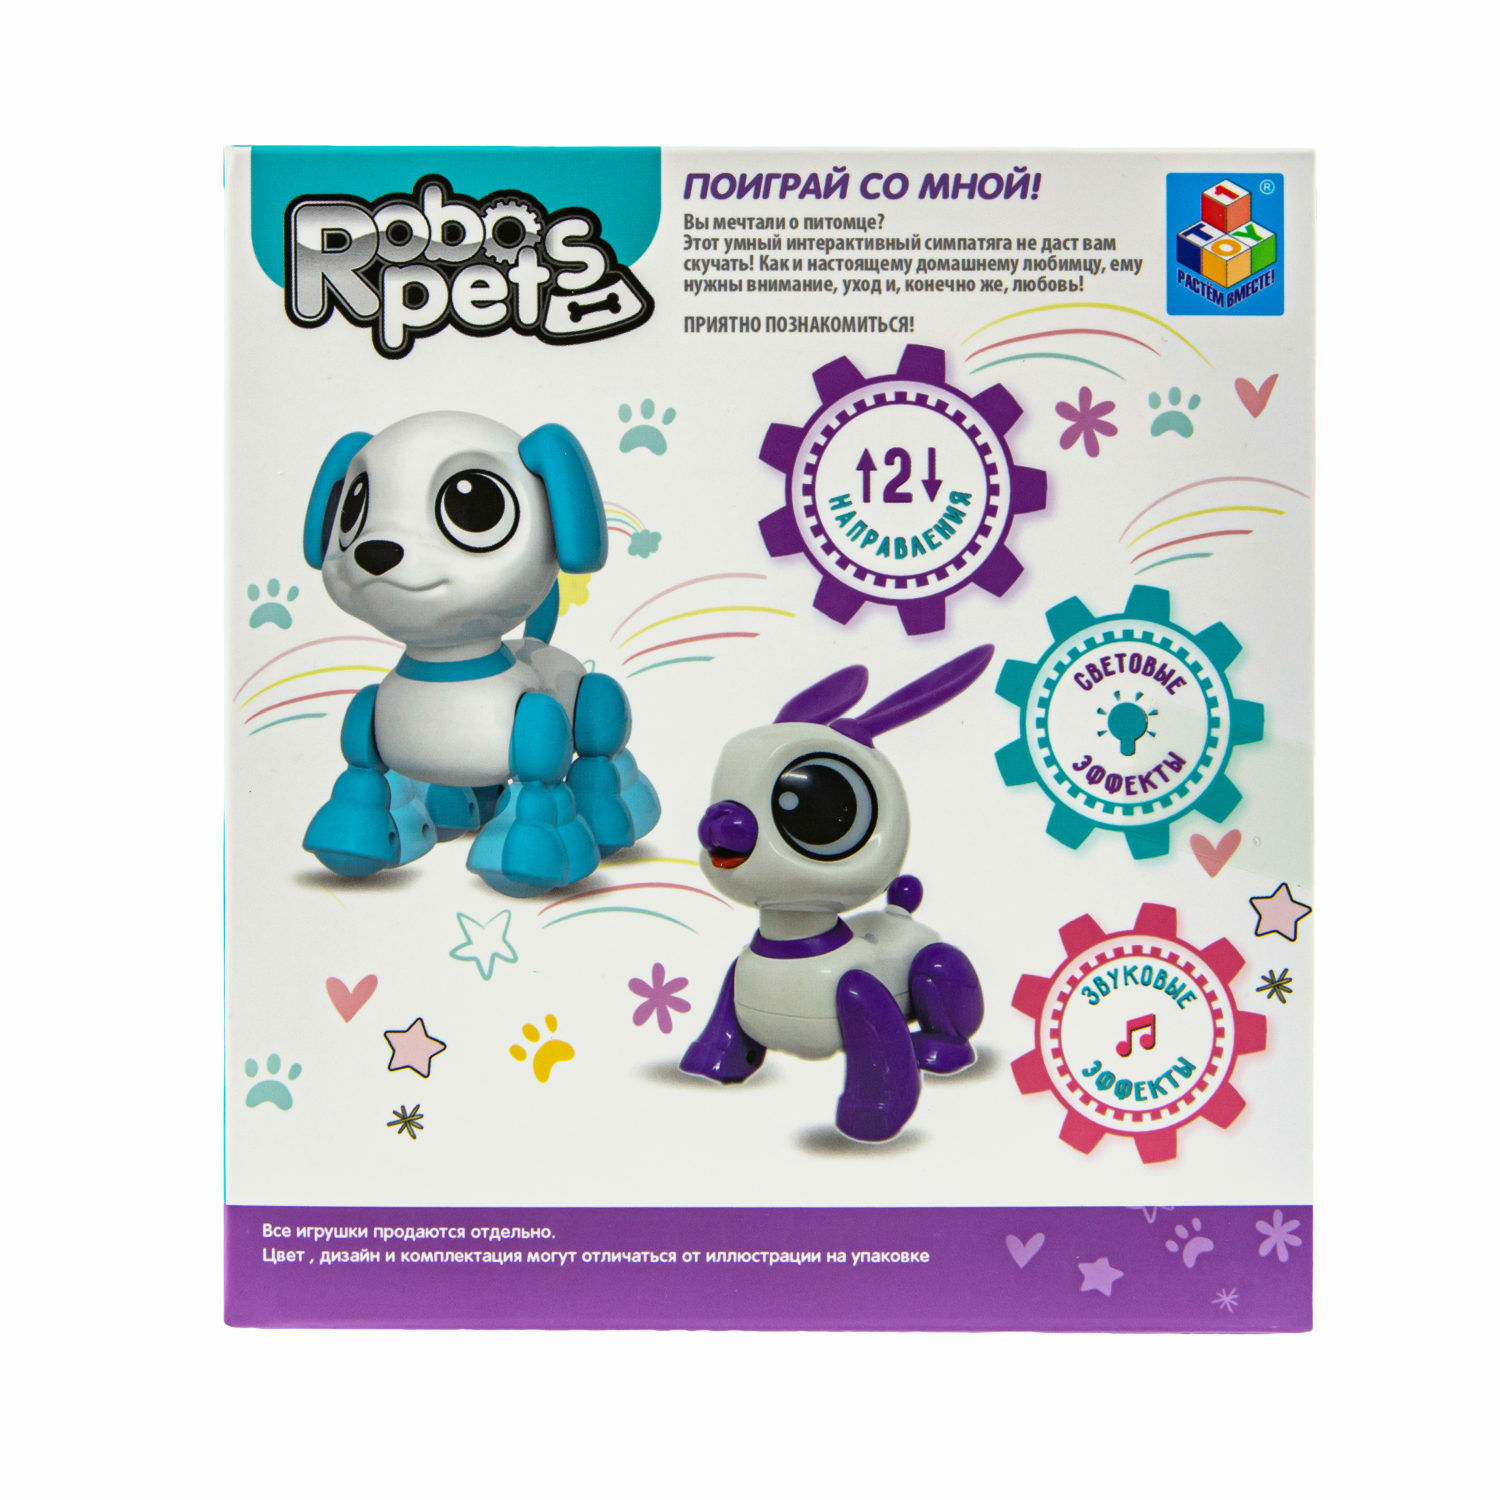 Интерактивная игрушка Robo Pets Кролик бело- фиолетовый со звуковыми световыми и эффектами движения - фото 7